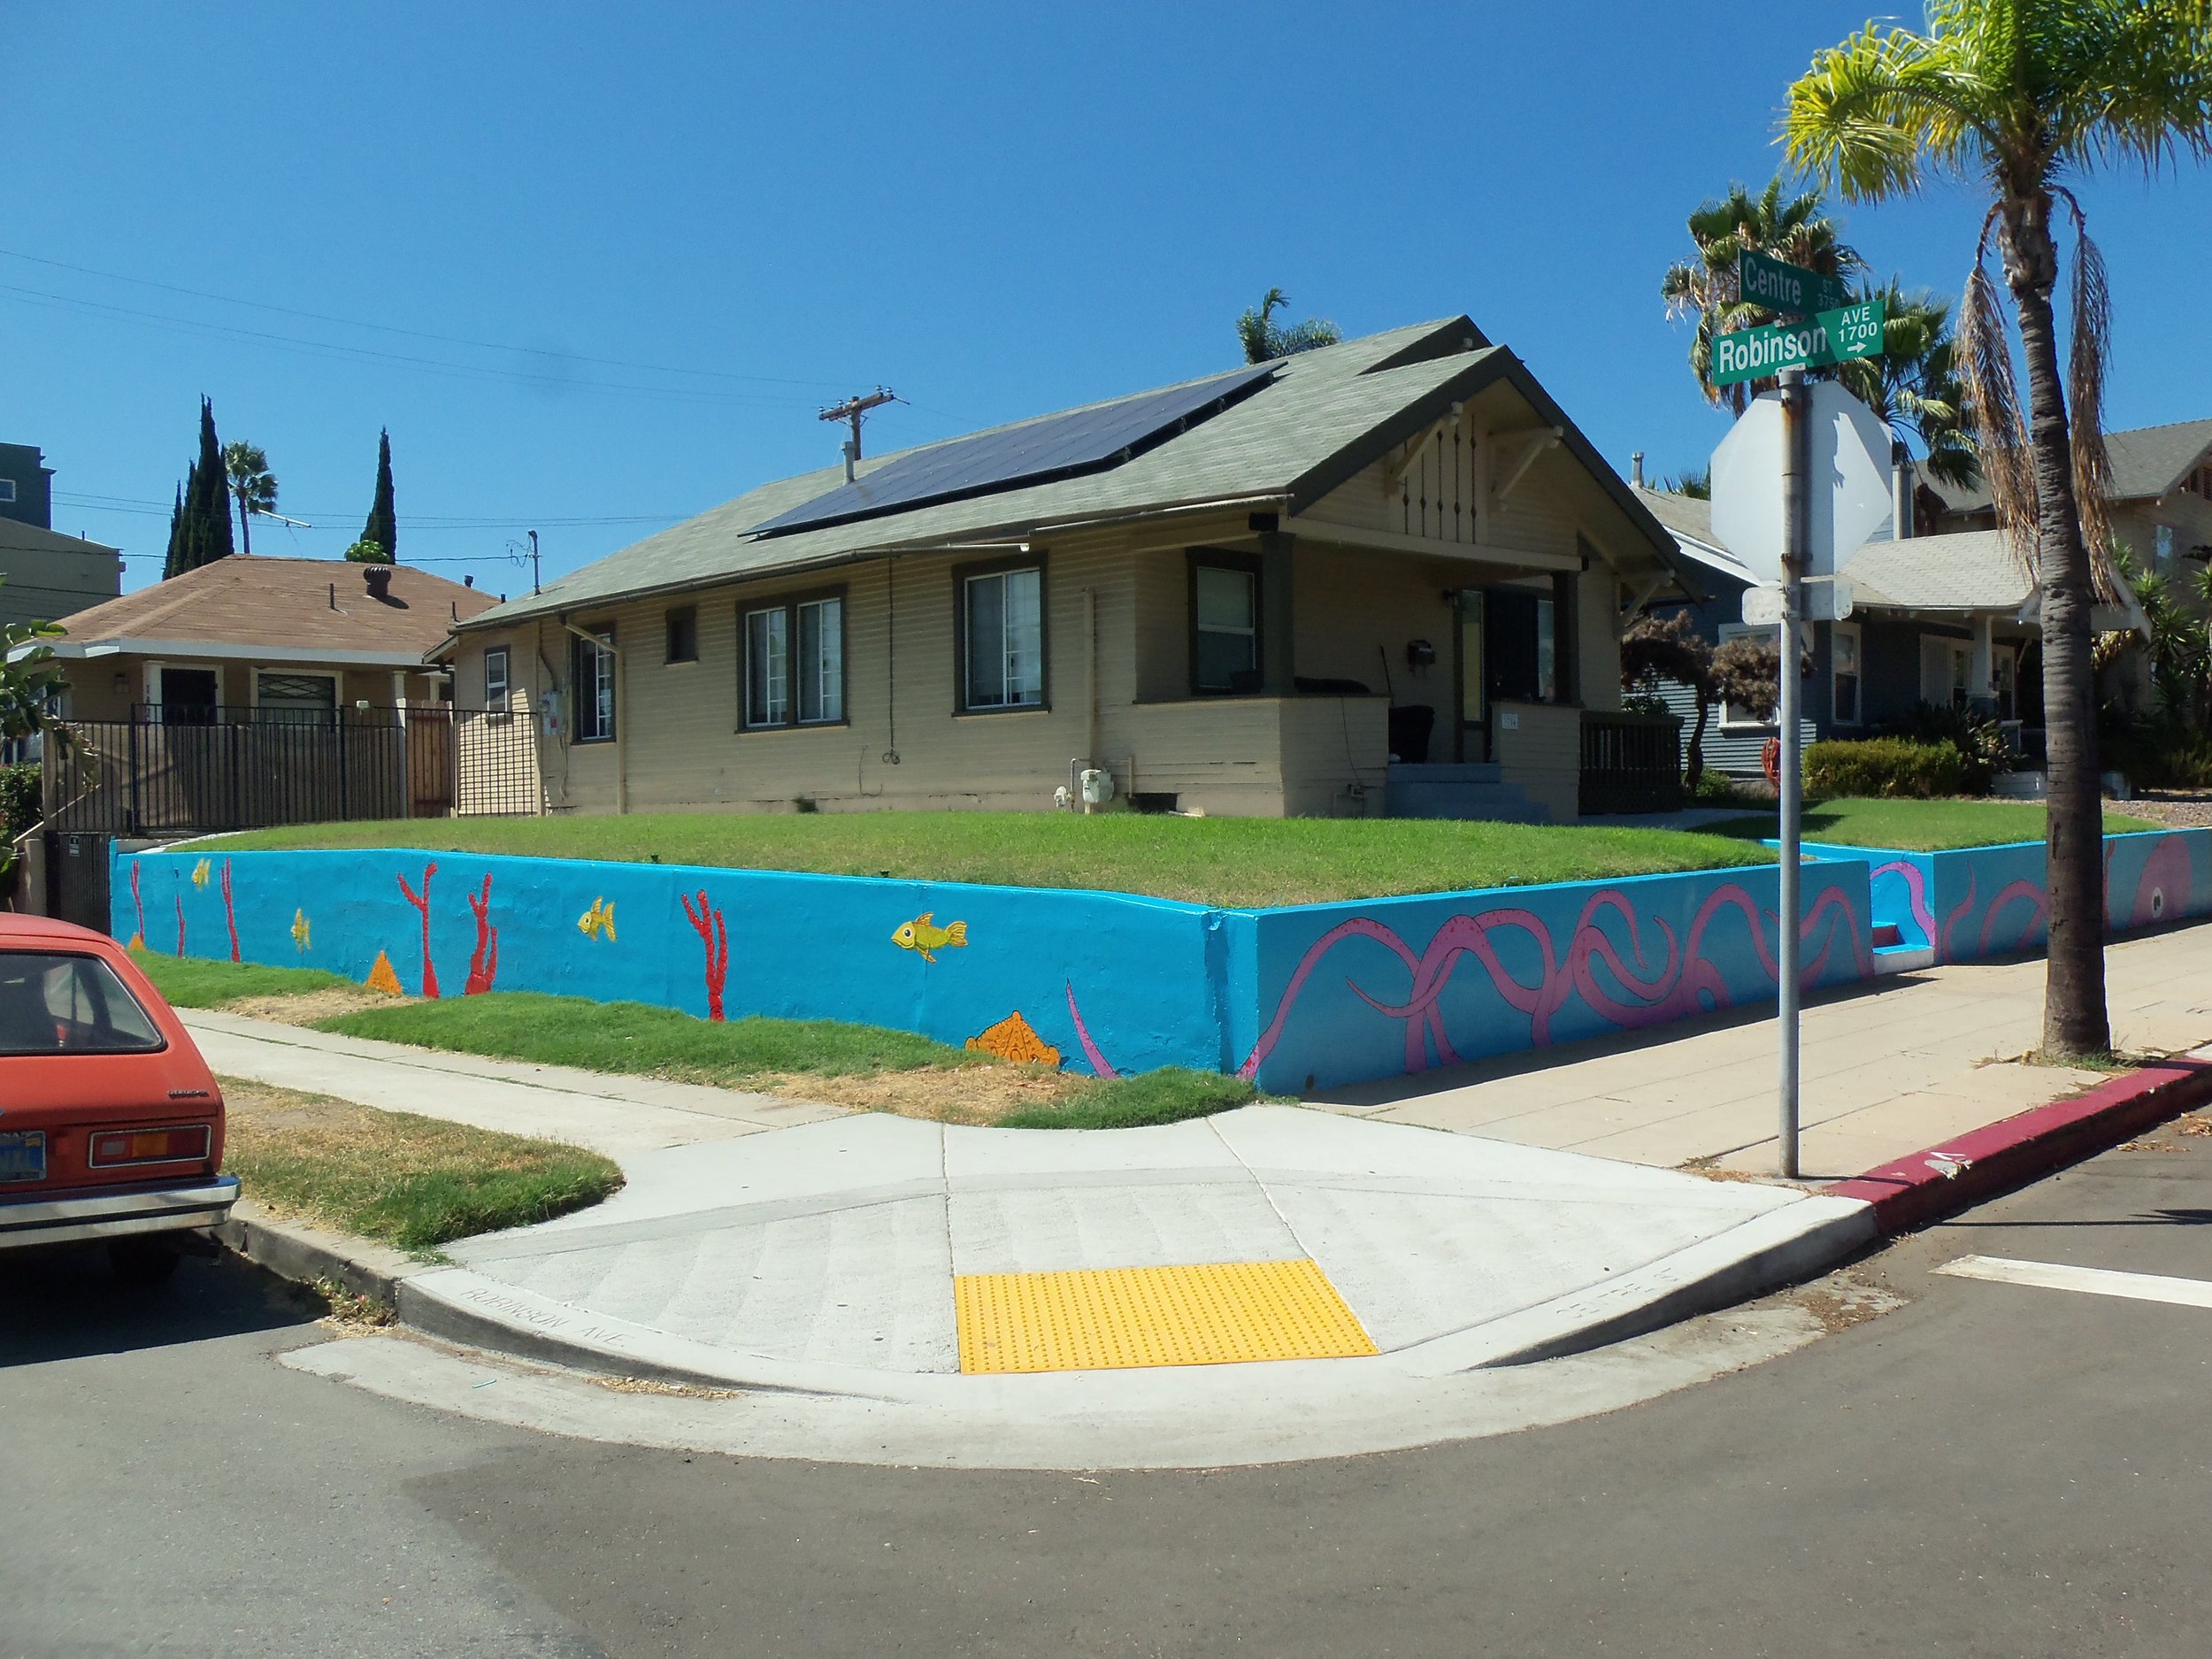 San-Diego-mural-gonza-fish-2015-julio-gonzalez-9.JPG